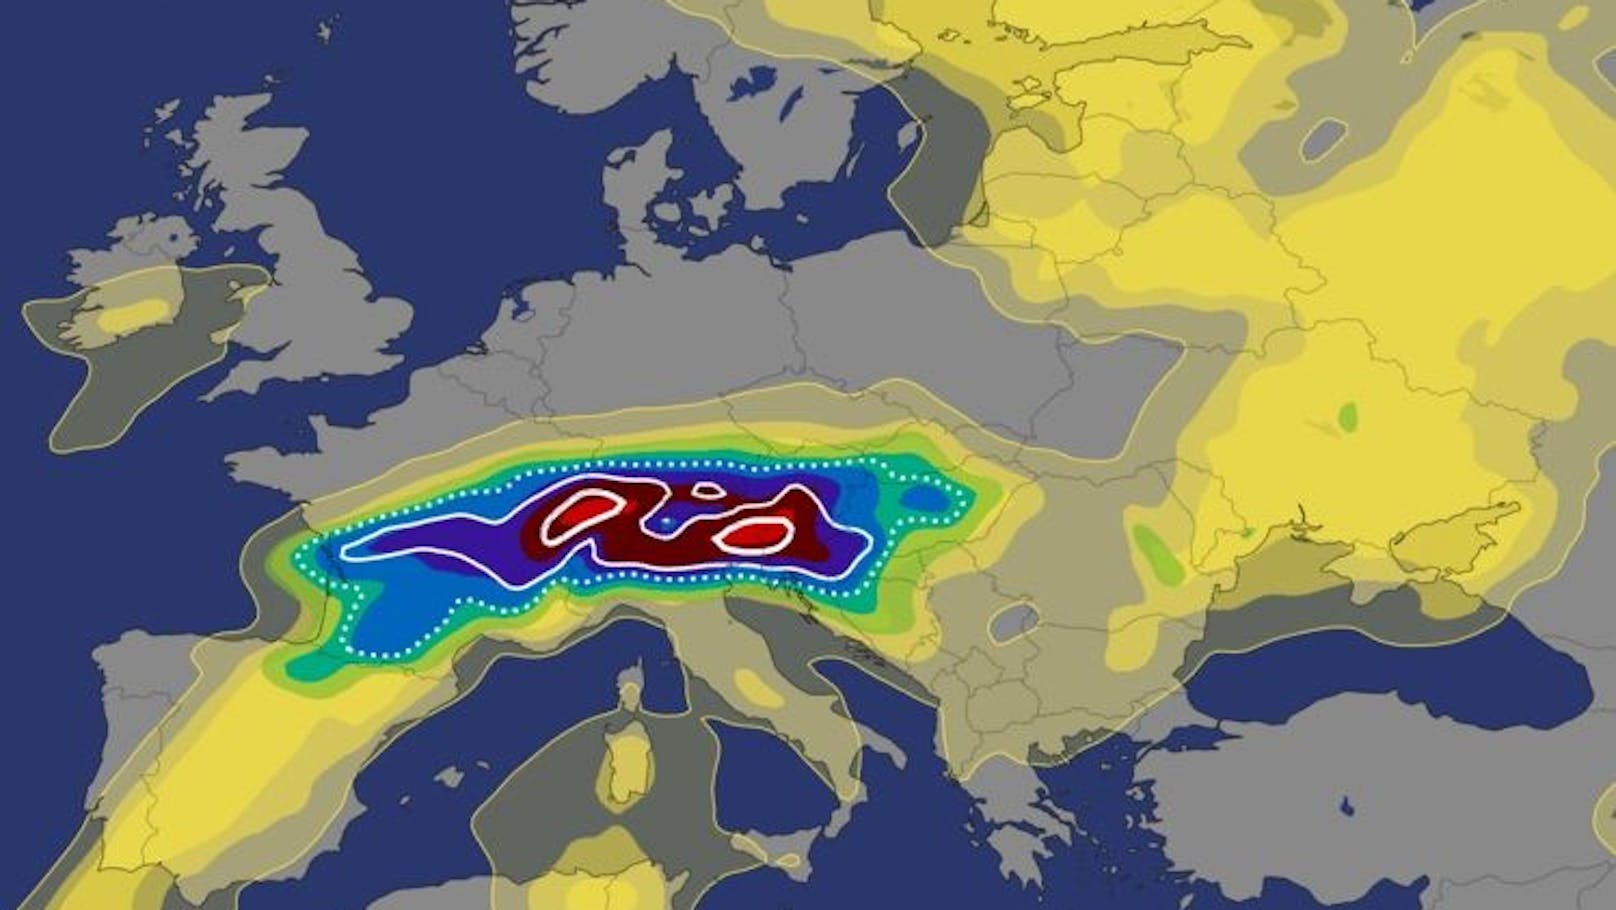 Österreich muss sich am Dienstag auf <a data-li-document-ref="100282311" href="https://www.heute.at/s/unwetter-oesterreich-neue-warnung-vor-superzellen-hagel-und-tornados-100282311">schwere Gewitter</a> einstellen.